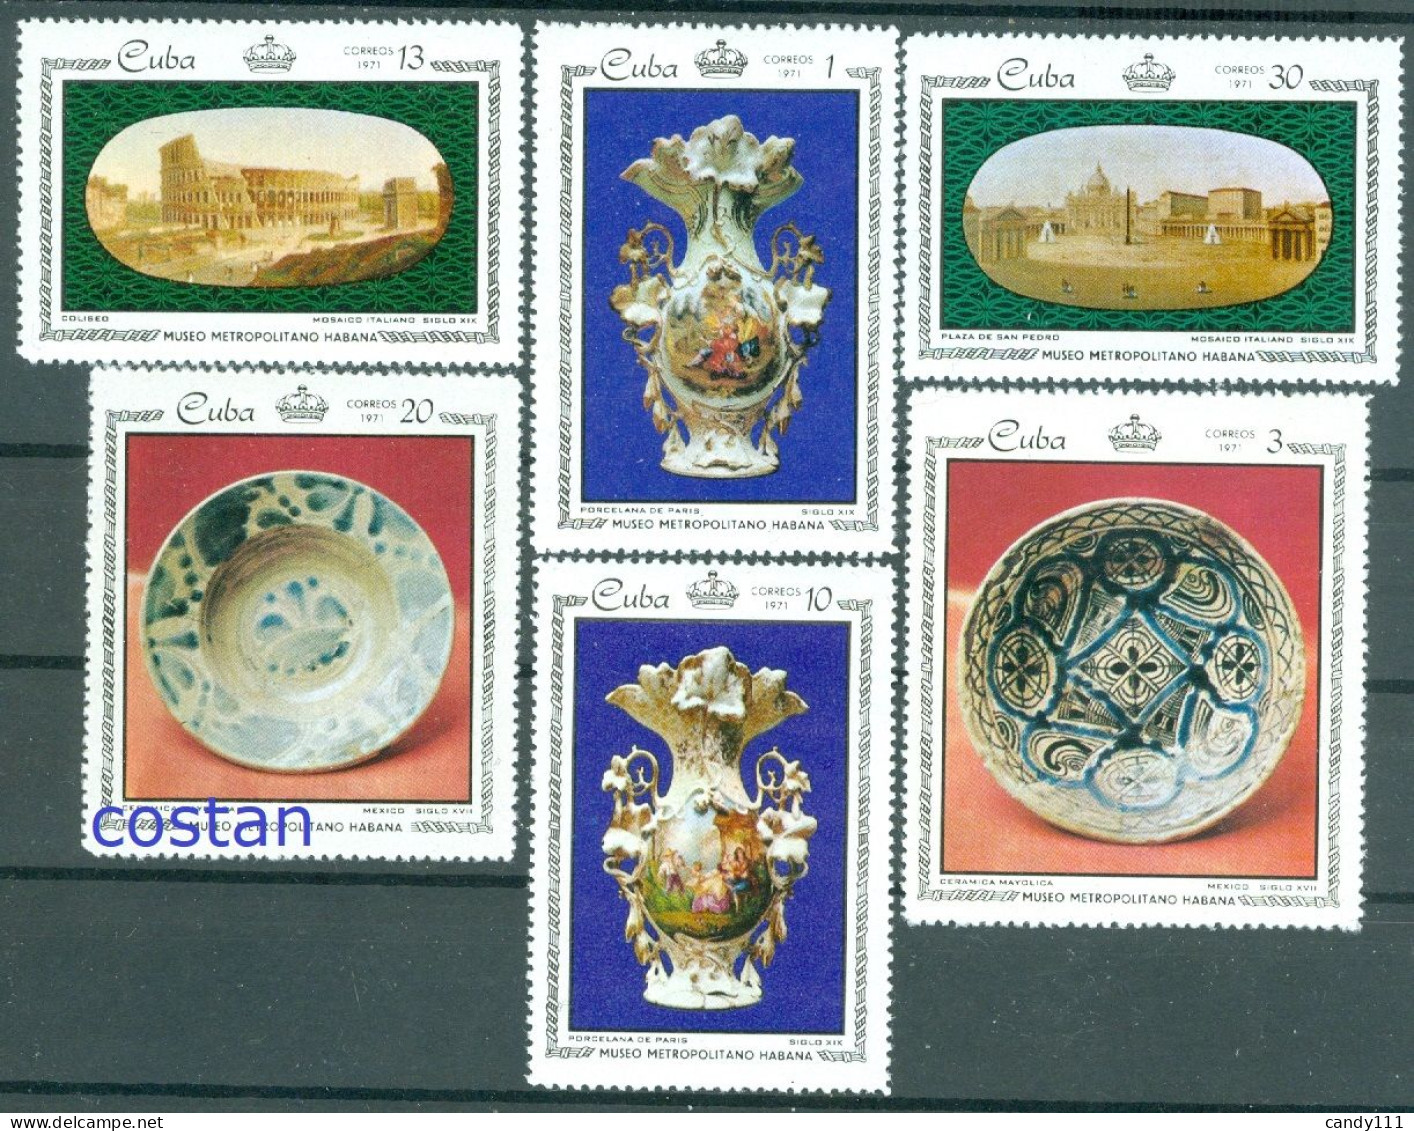 1971 Porcelain/Paris,Colosseum,Majolique Faïence,St Peter's Square,CUBA,1674,MNH - Porzellan